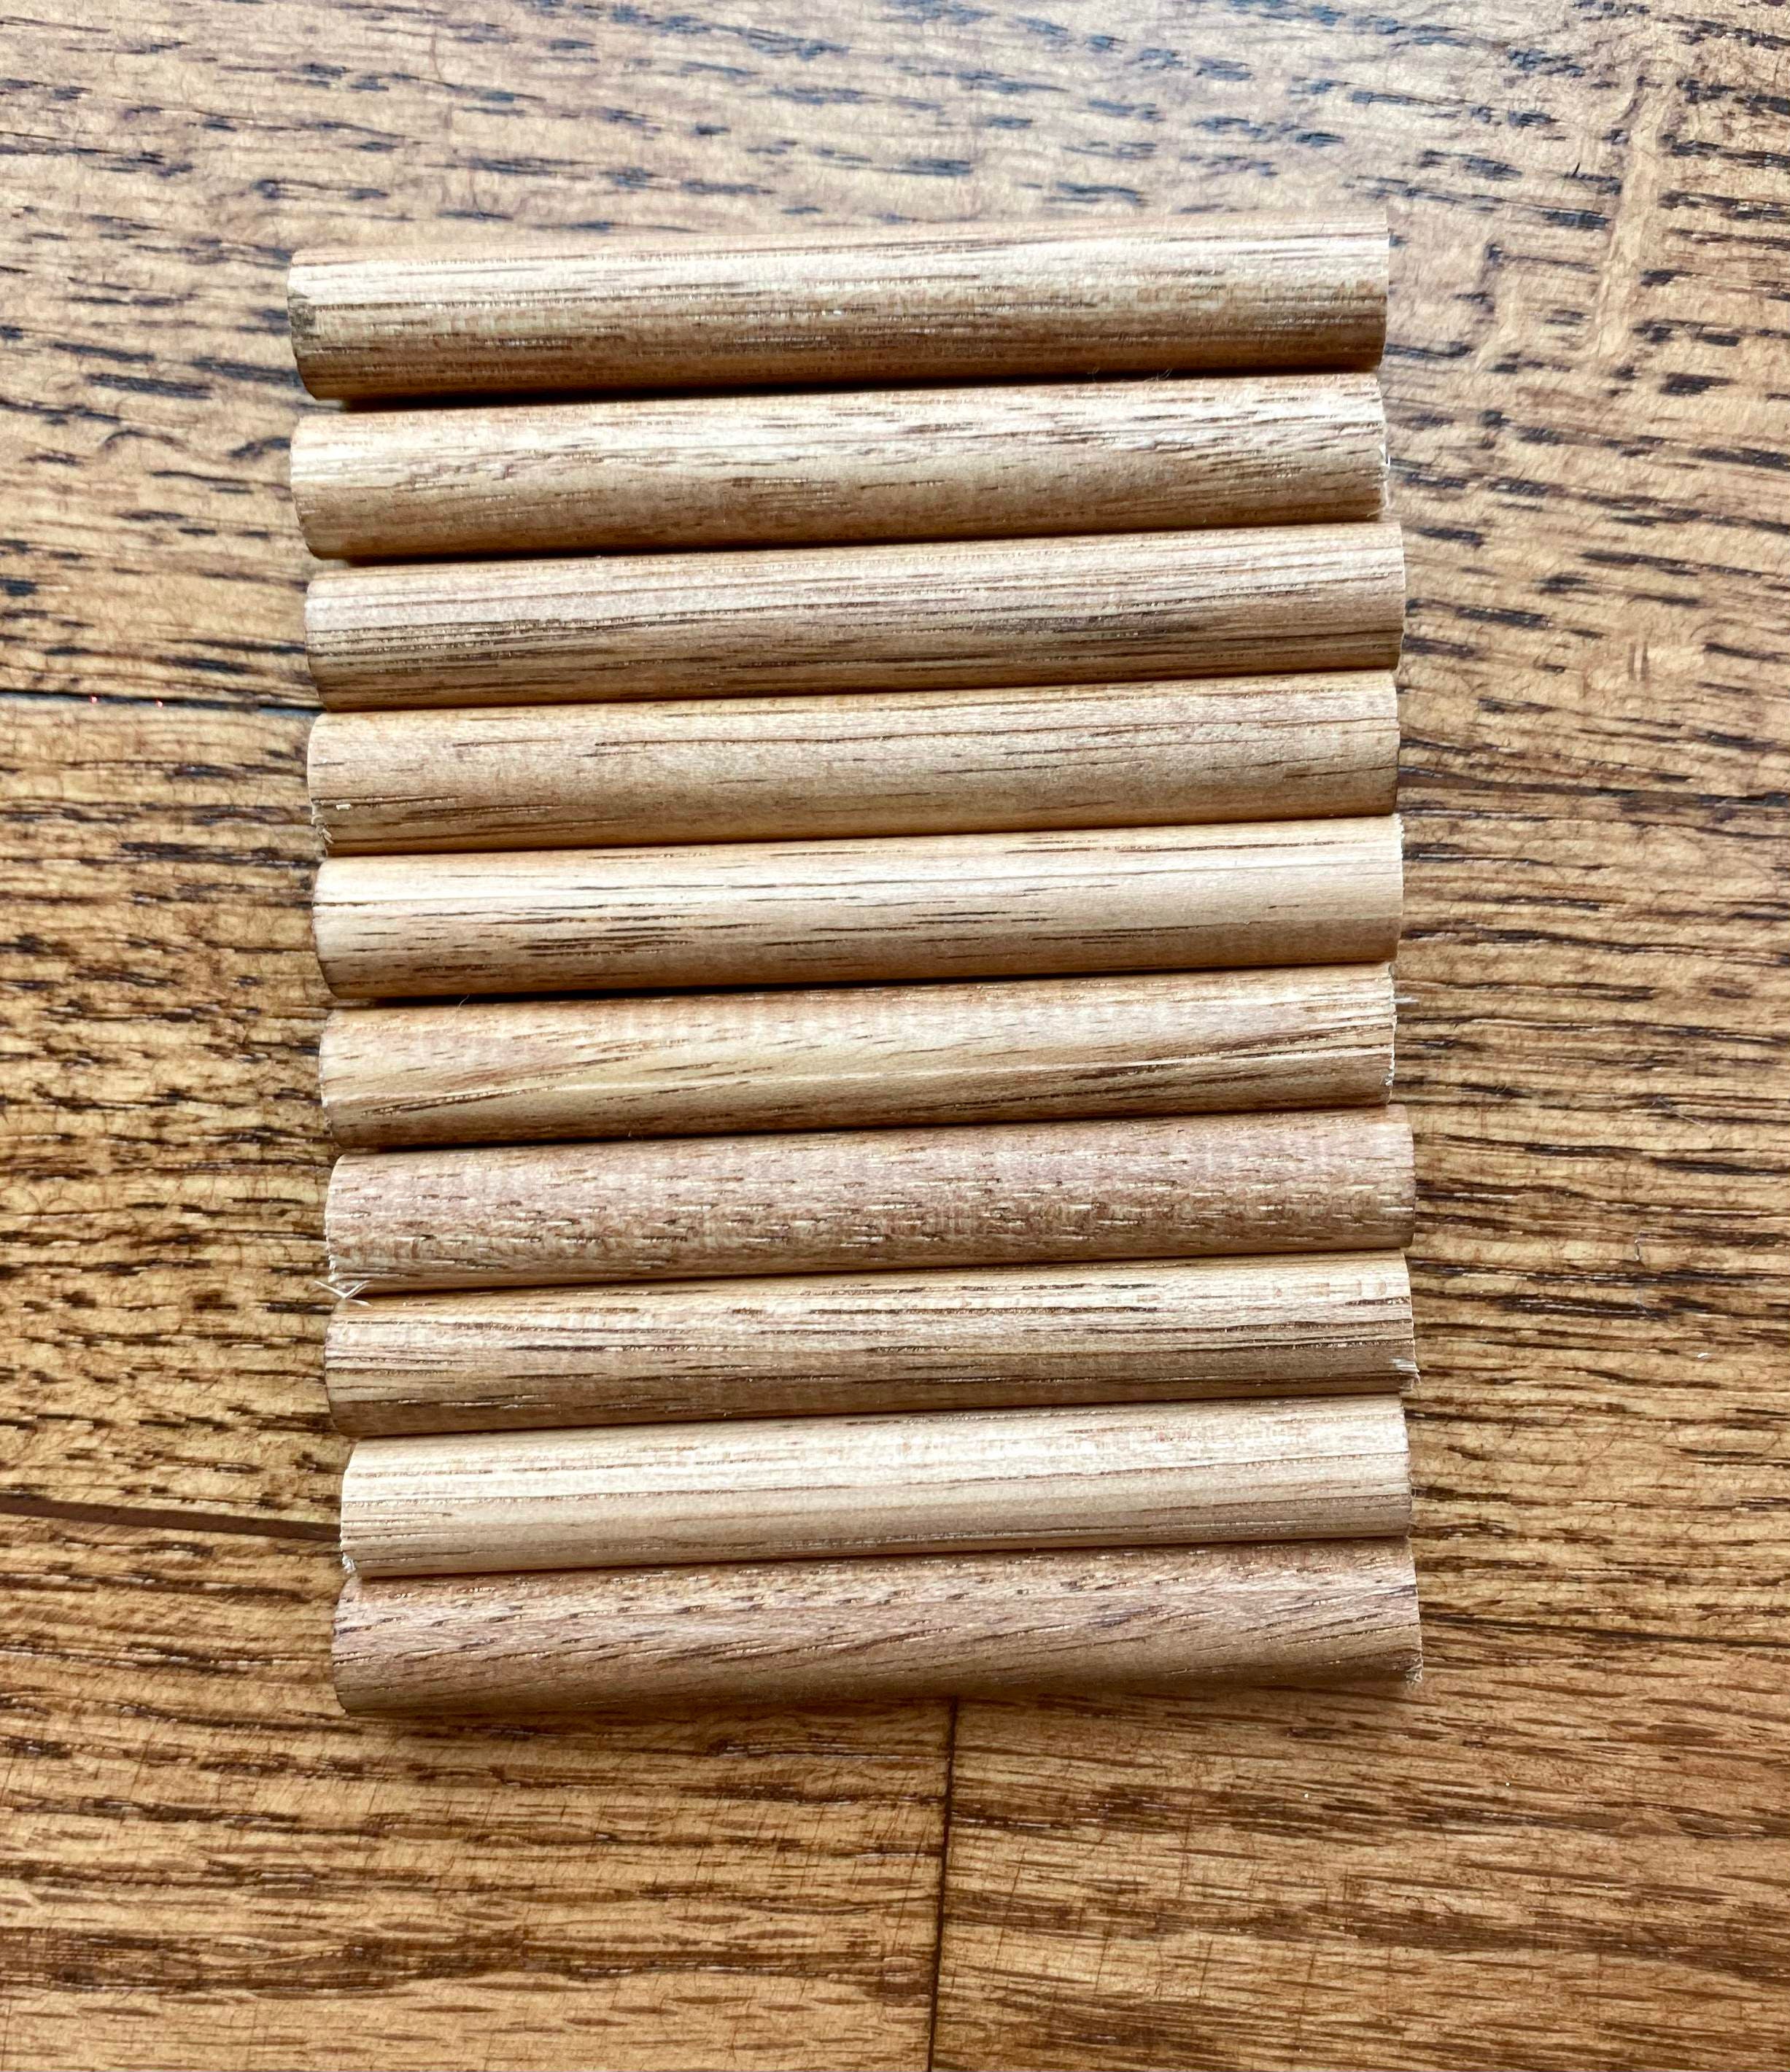 Wooden Round Dowel Rod- 1/2 x 12 (Dozen)